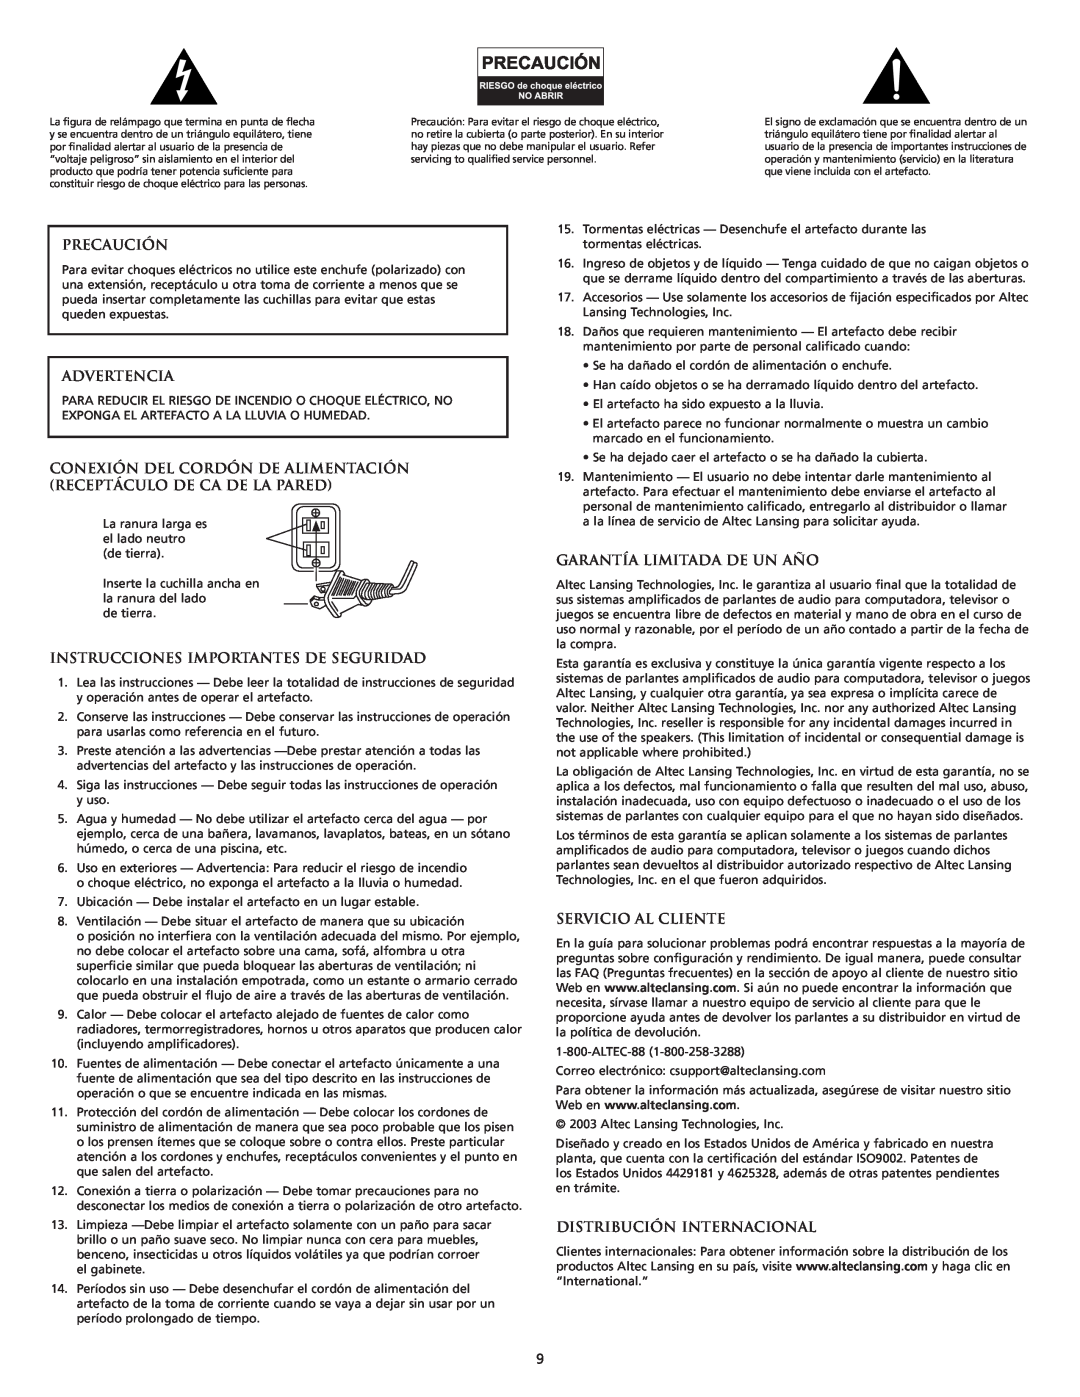 Altec Lansing XA2021 manual Precaución, Advertencia, Instrucciones Importantes De Seguridad, Garantía Limitada De Un Año 